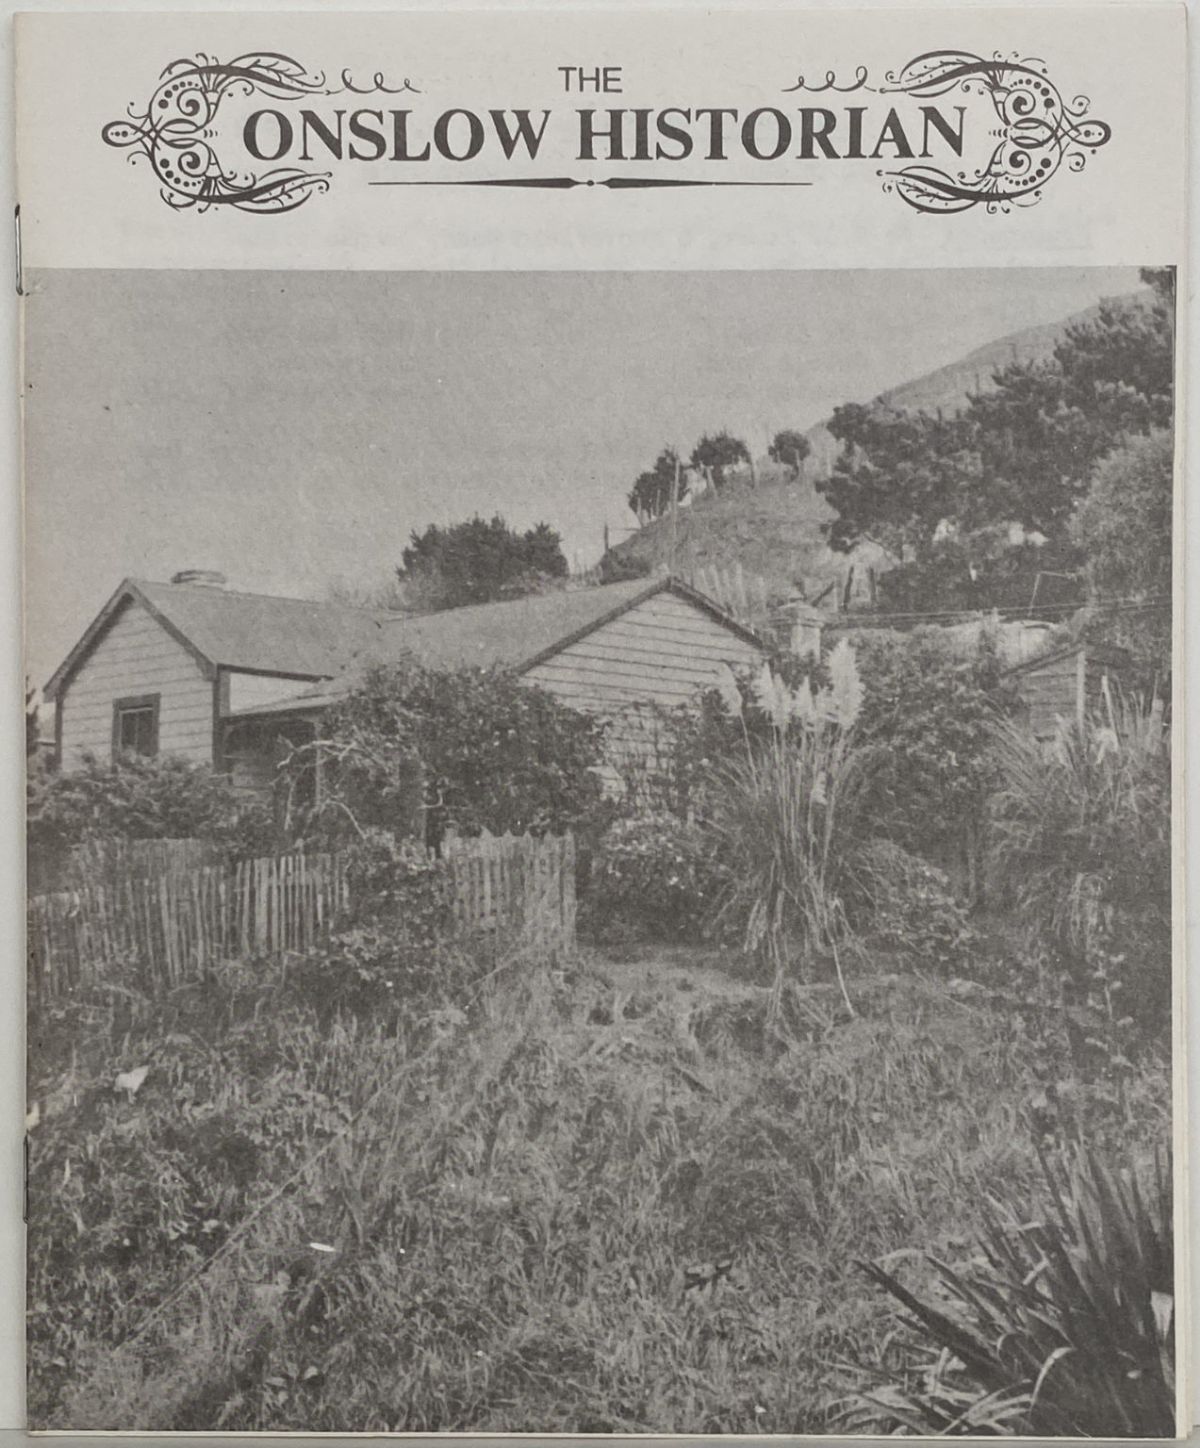 THE ONSLOW HISTORIAN: Vol. 2 - No. 1, 1972